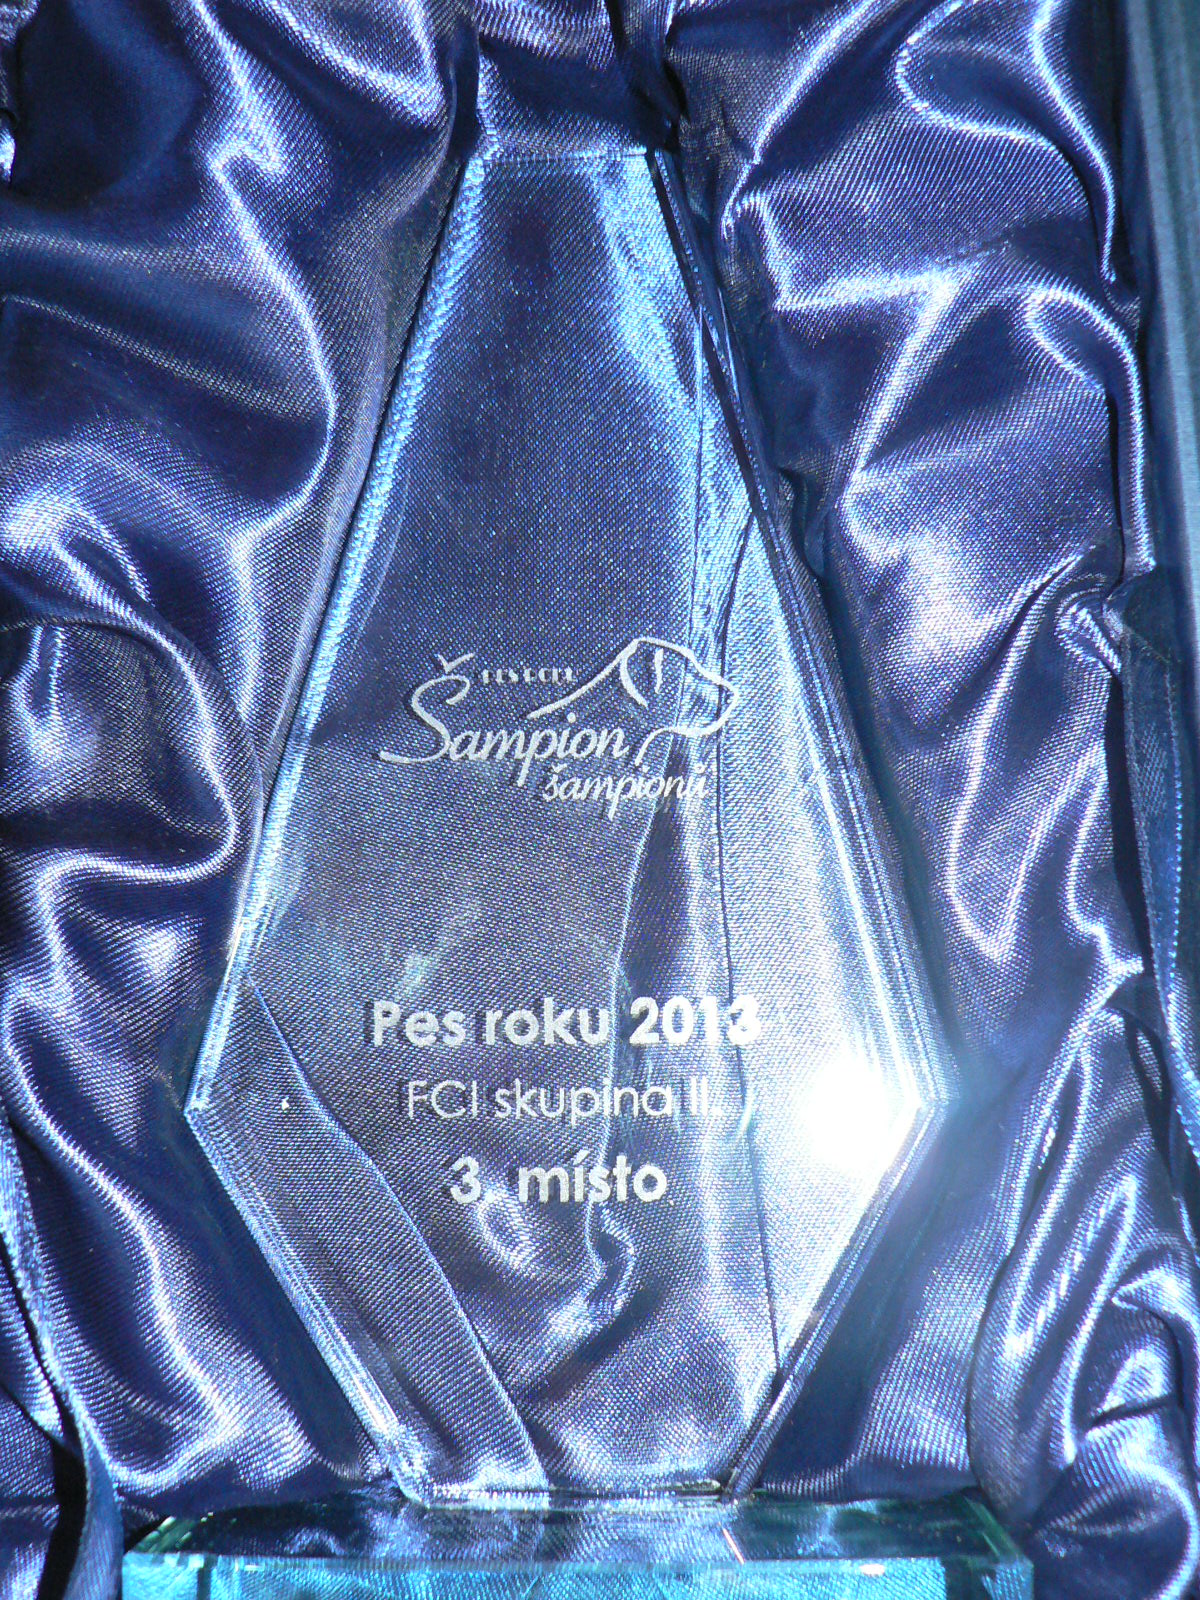 Pes roku 2013 - 3. místo v 2.sk. FCI